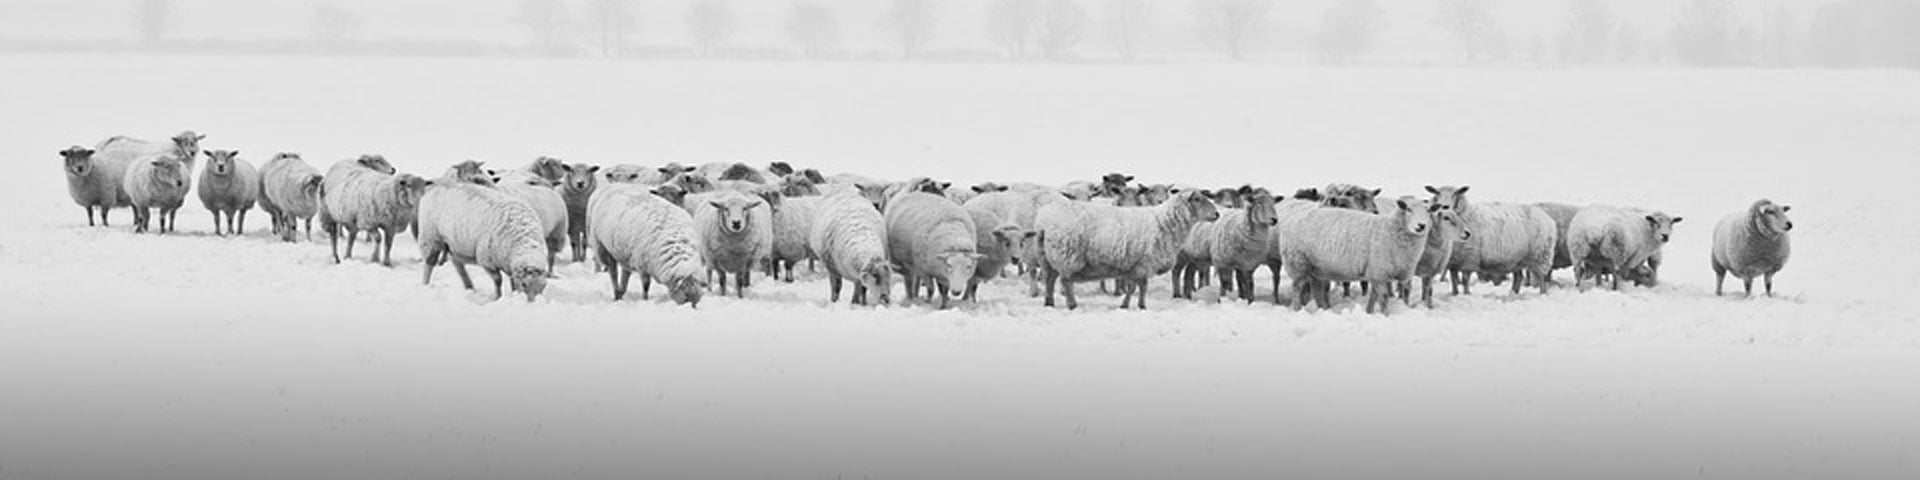 winterscheren-schapen-1920x480